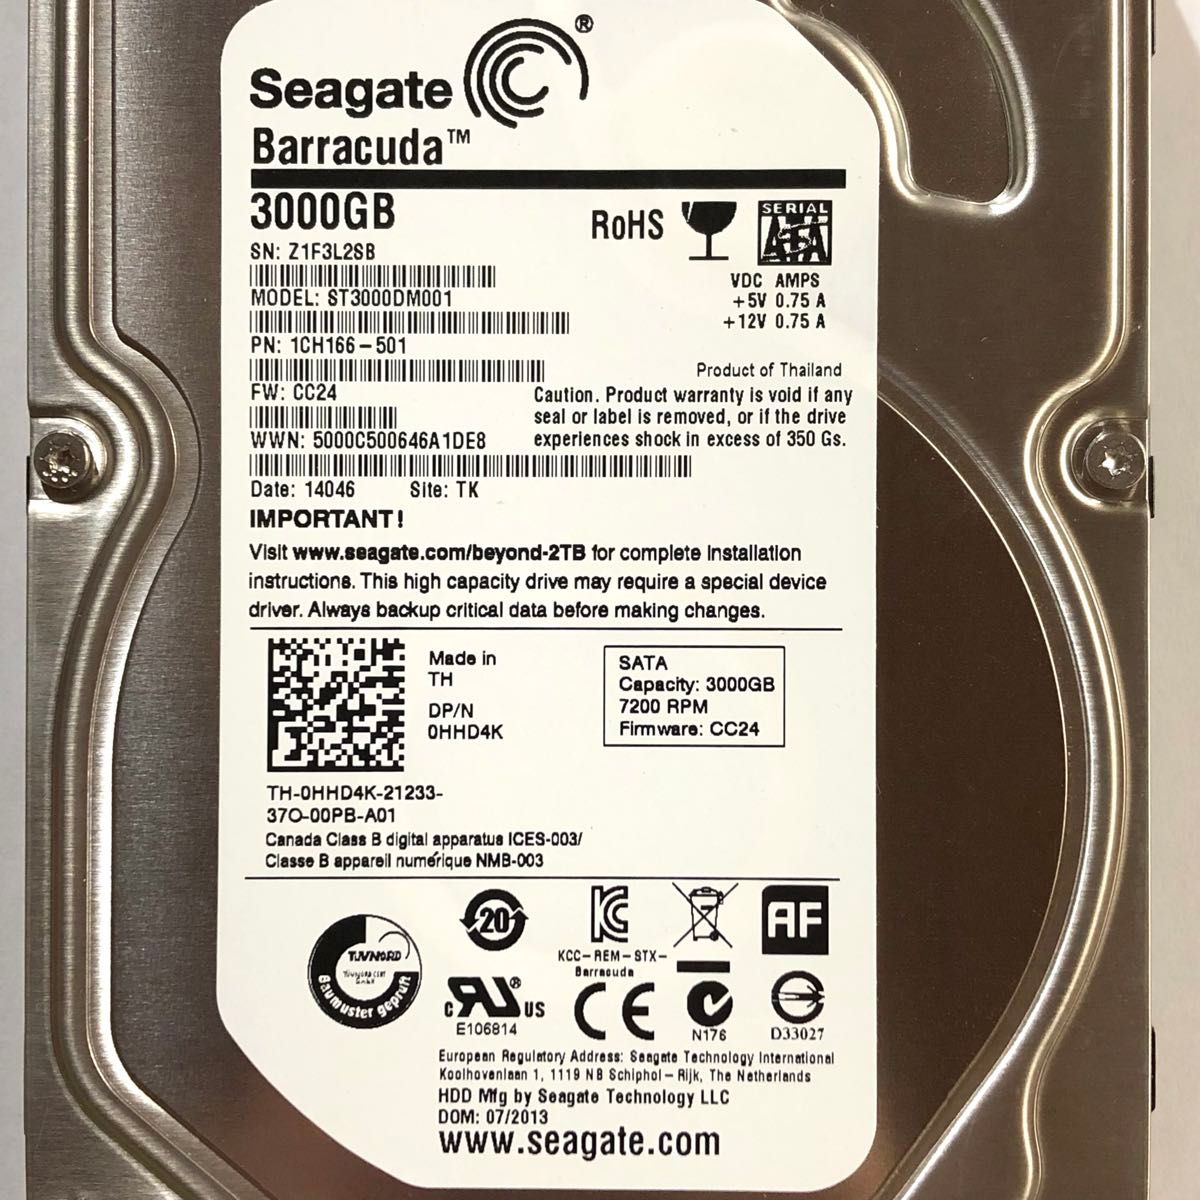 ★ 3TB SEAGATE BarraCuda 3.5インチ SATA 内蔵型HDD ST3000DM001 内蔵型ハードディスク